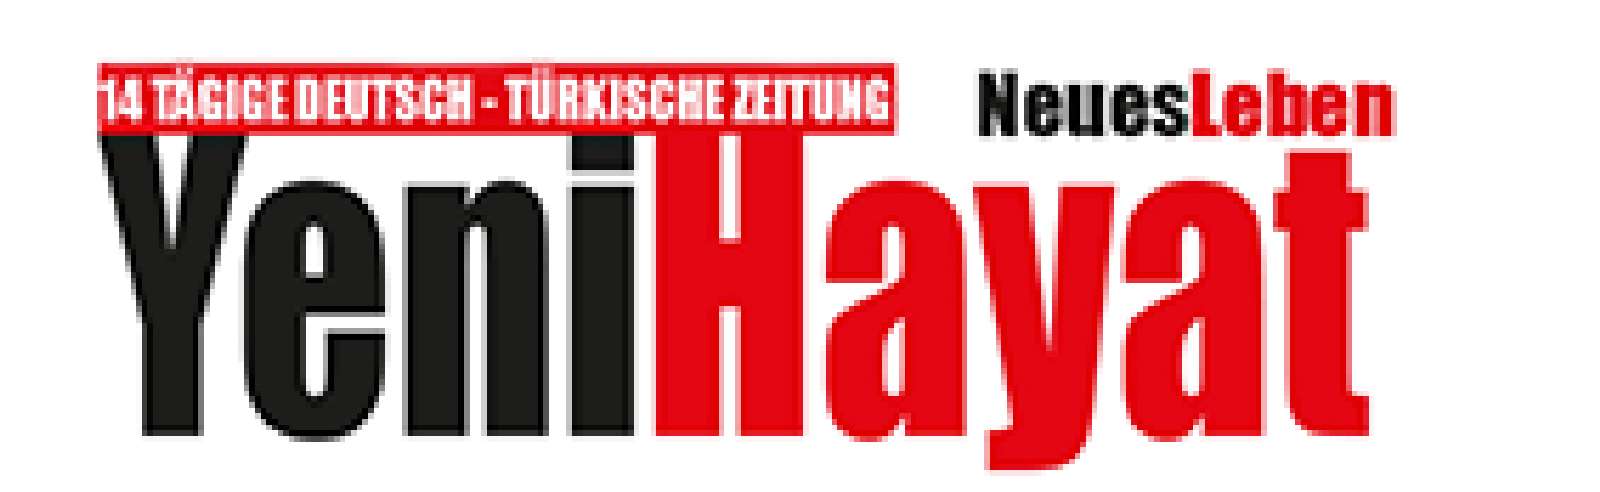 Yeni Hayat / Neues Leben-Deutsch-Türkische Zeitung